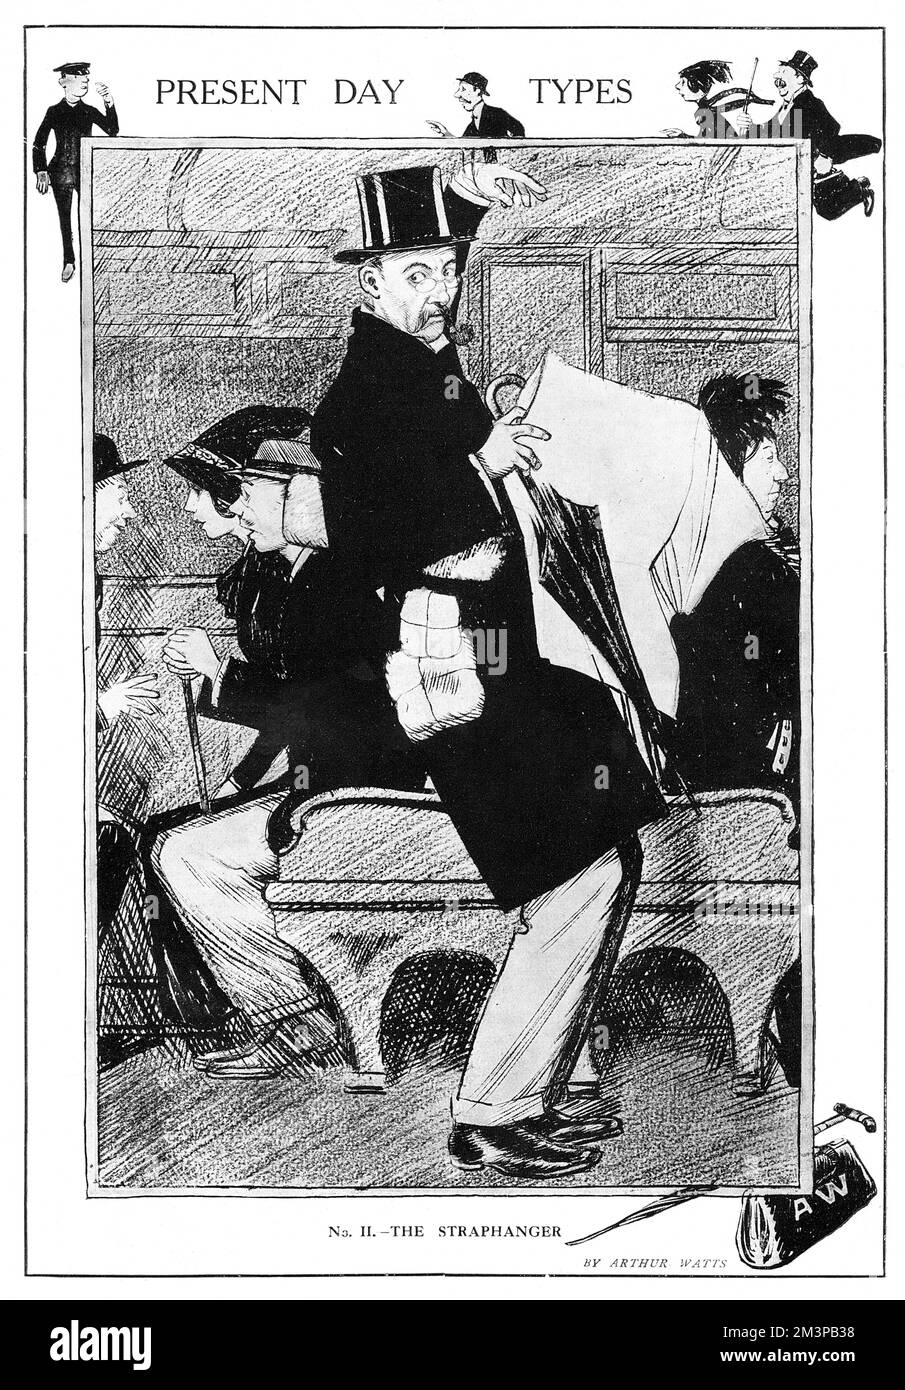 Ein Gentleman mit Hut und Pfeife raucht versucht, sein Gleichgewicht in einem Londoner U-Bahn-Zug zu halten, indem er an einem der Gurte hängt, die seinen Regenschirm, die Zeitung und mehrere Pakete halten. Der Begriff „Traphanger“ wurde für diejenigen geprägt, die an den Riemen der Röhre hängten. Datum: 1914 Stockfoto